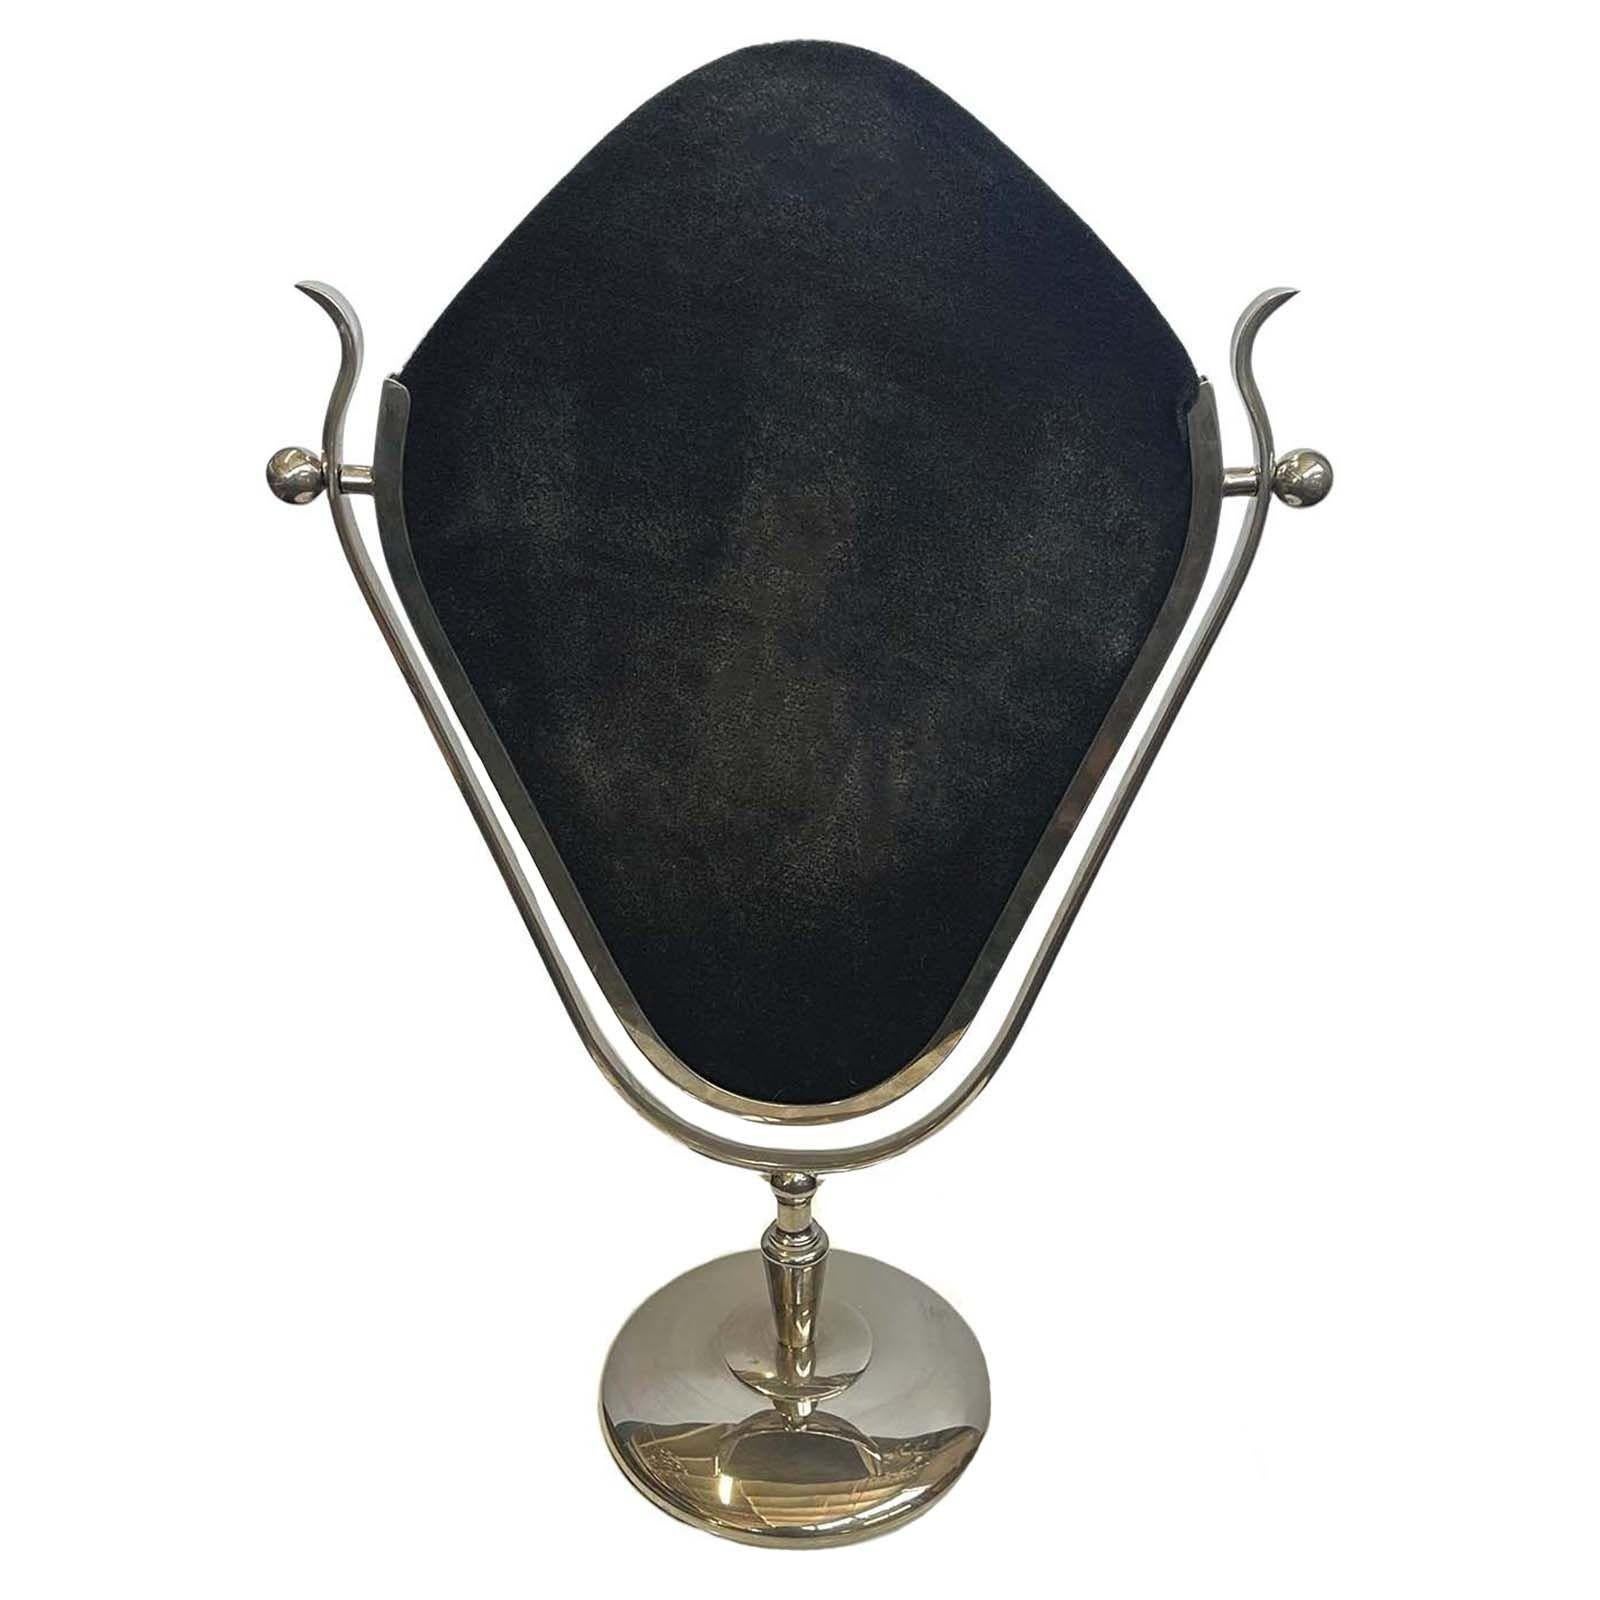 Dieser atemberaubende Kosmetikspiegel, der in den 1960er Jahren von Charles Hollis Jones entworfen wurde, zeichnet sich durch einen eleganten, sorgfältig aus vernickeltem Metall gefertigten Rahmen aus, der jedem Waschtisch oder Ankleidebereich einen